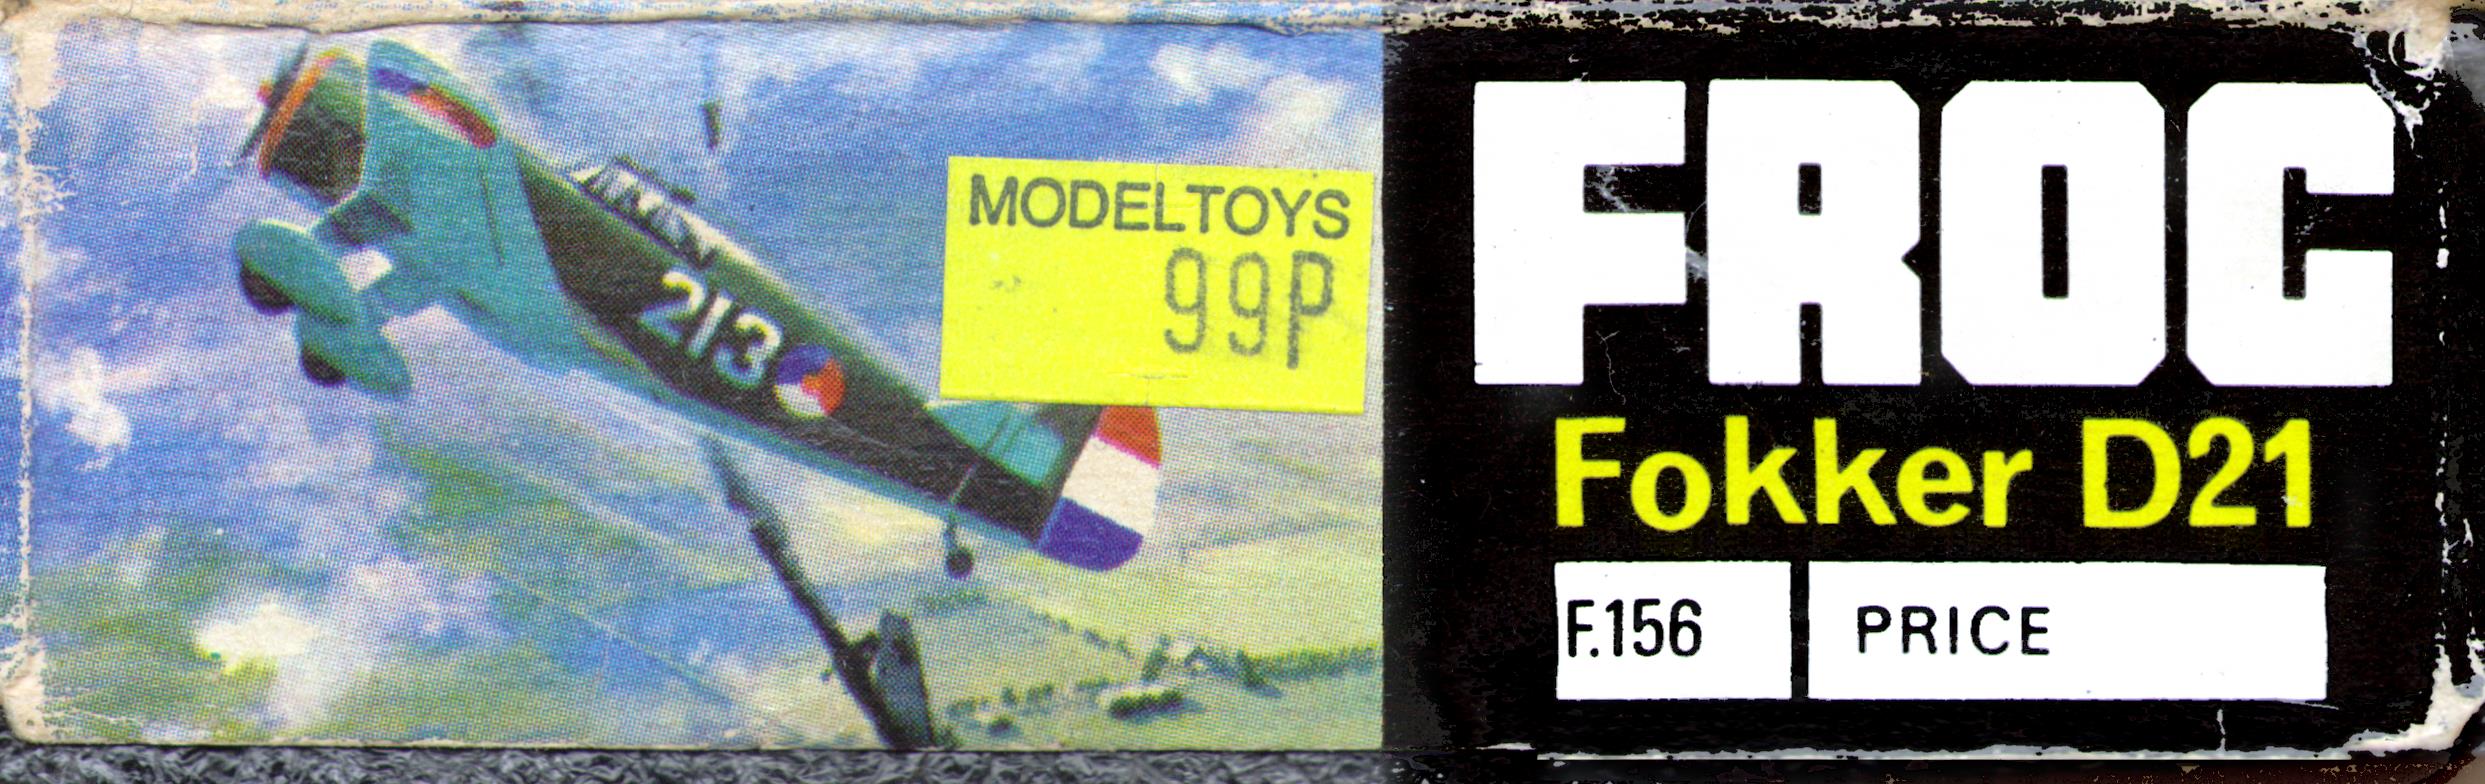 Верх коробки FROG Black series F156 Fokker D21